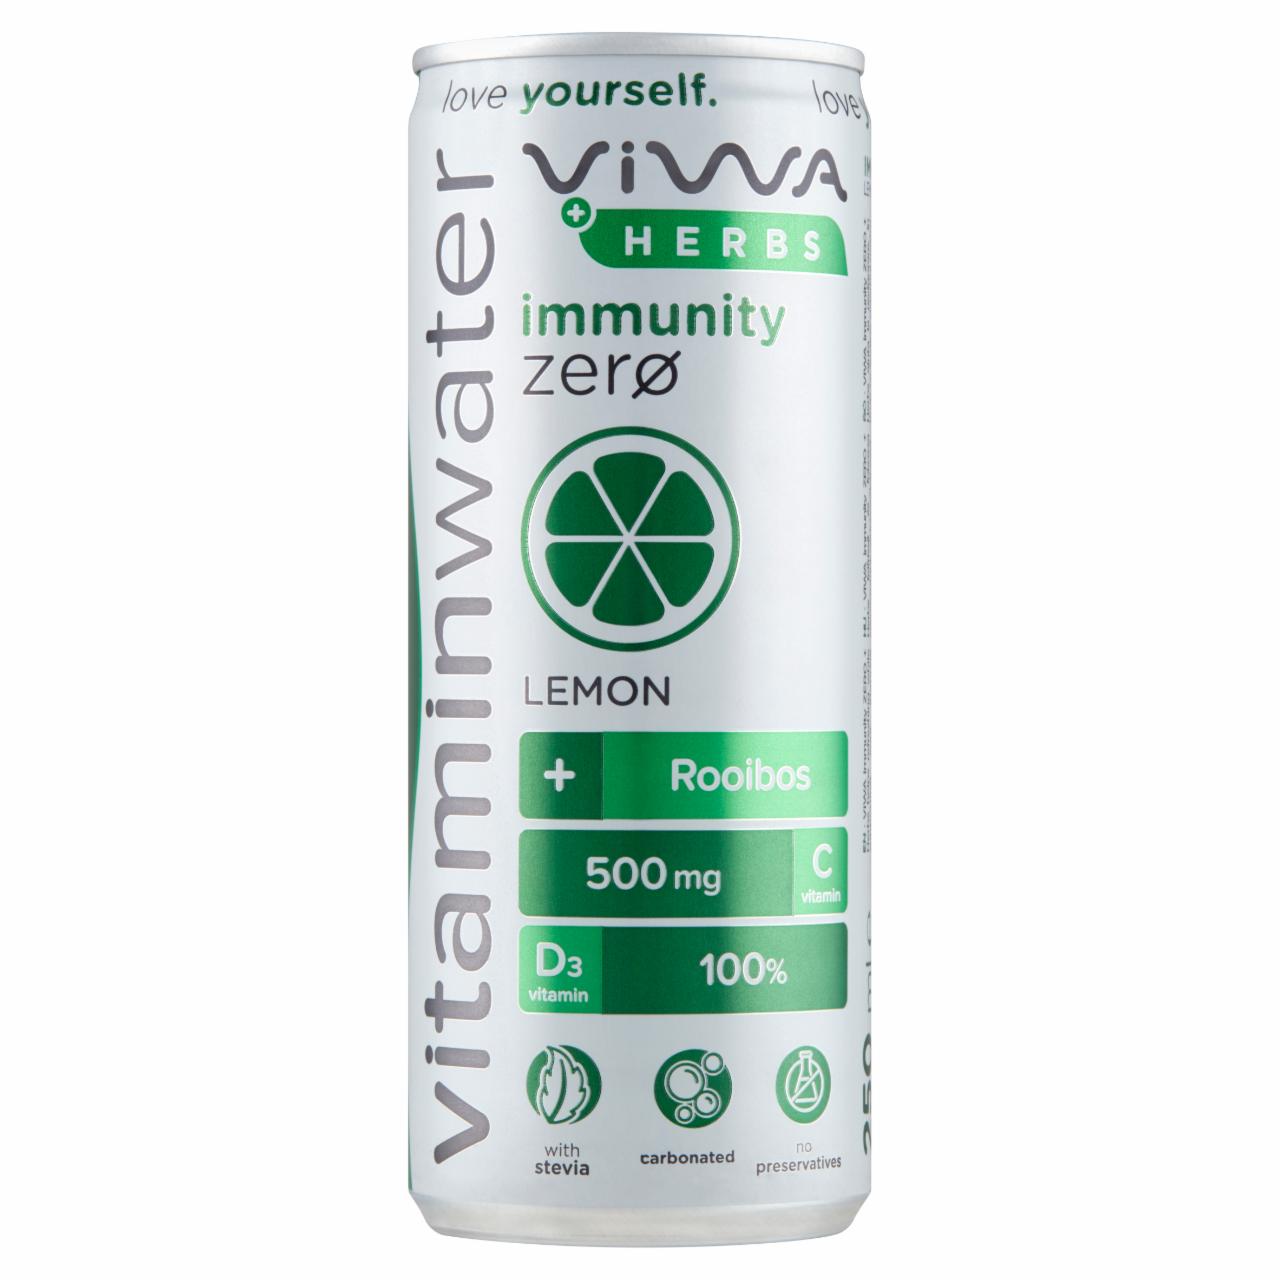 Képek - Viwa Vitaminwater Immunity Zero + Herbs citromos, energiamentes, szénsavas üdítőital 250 ml